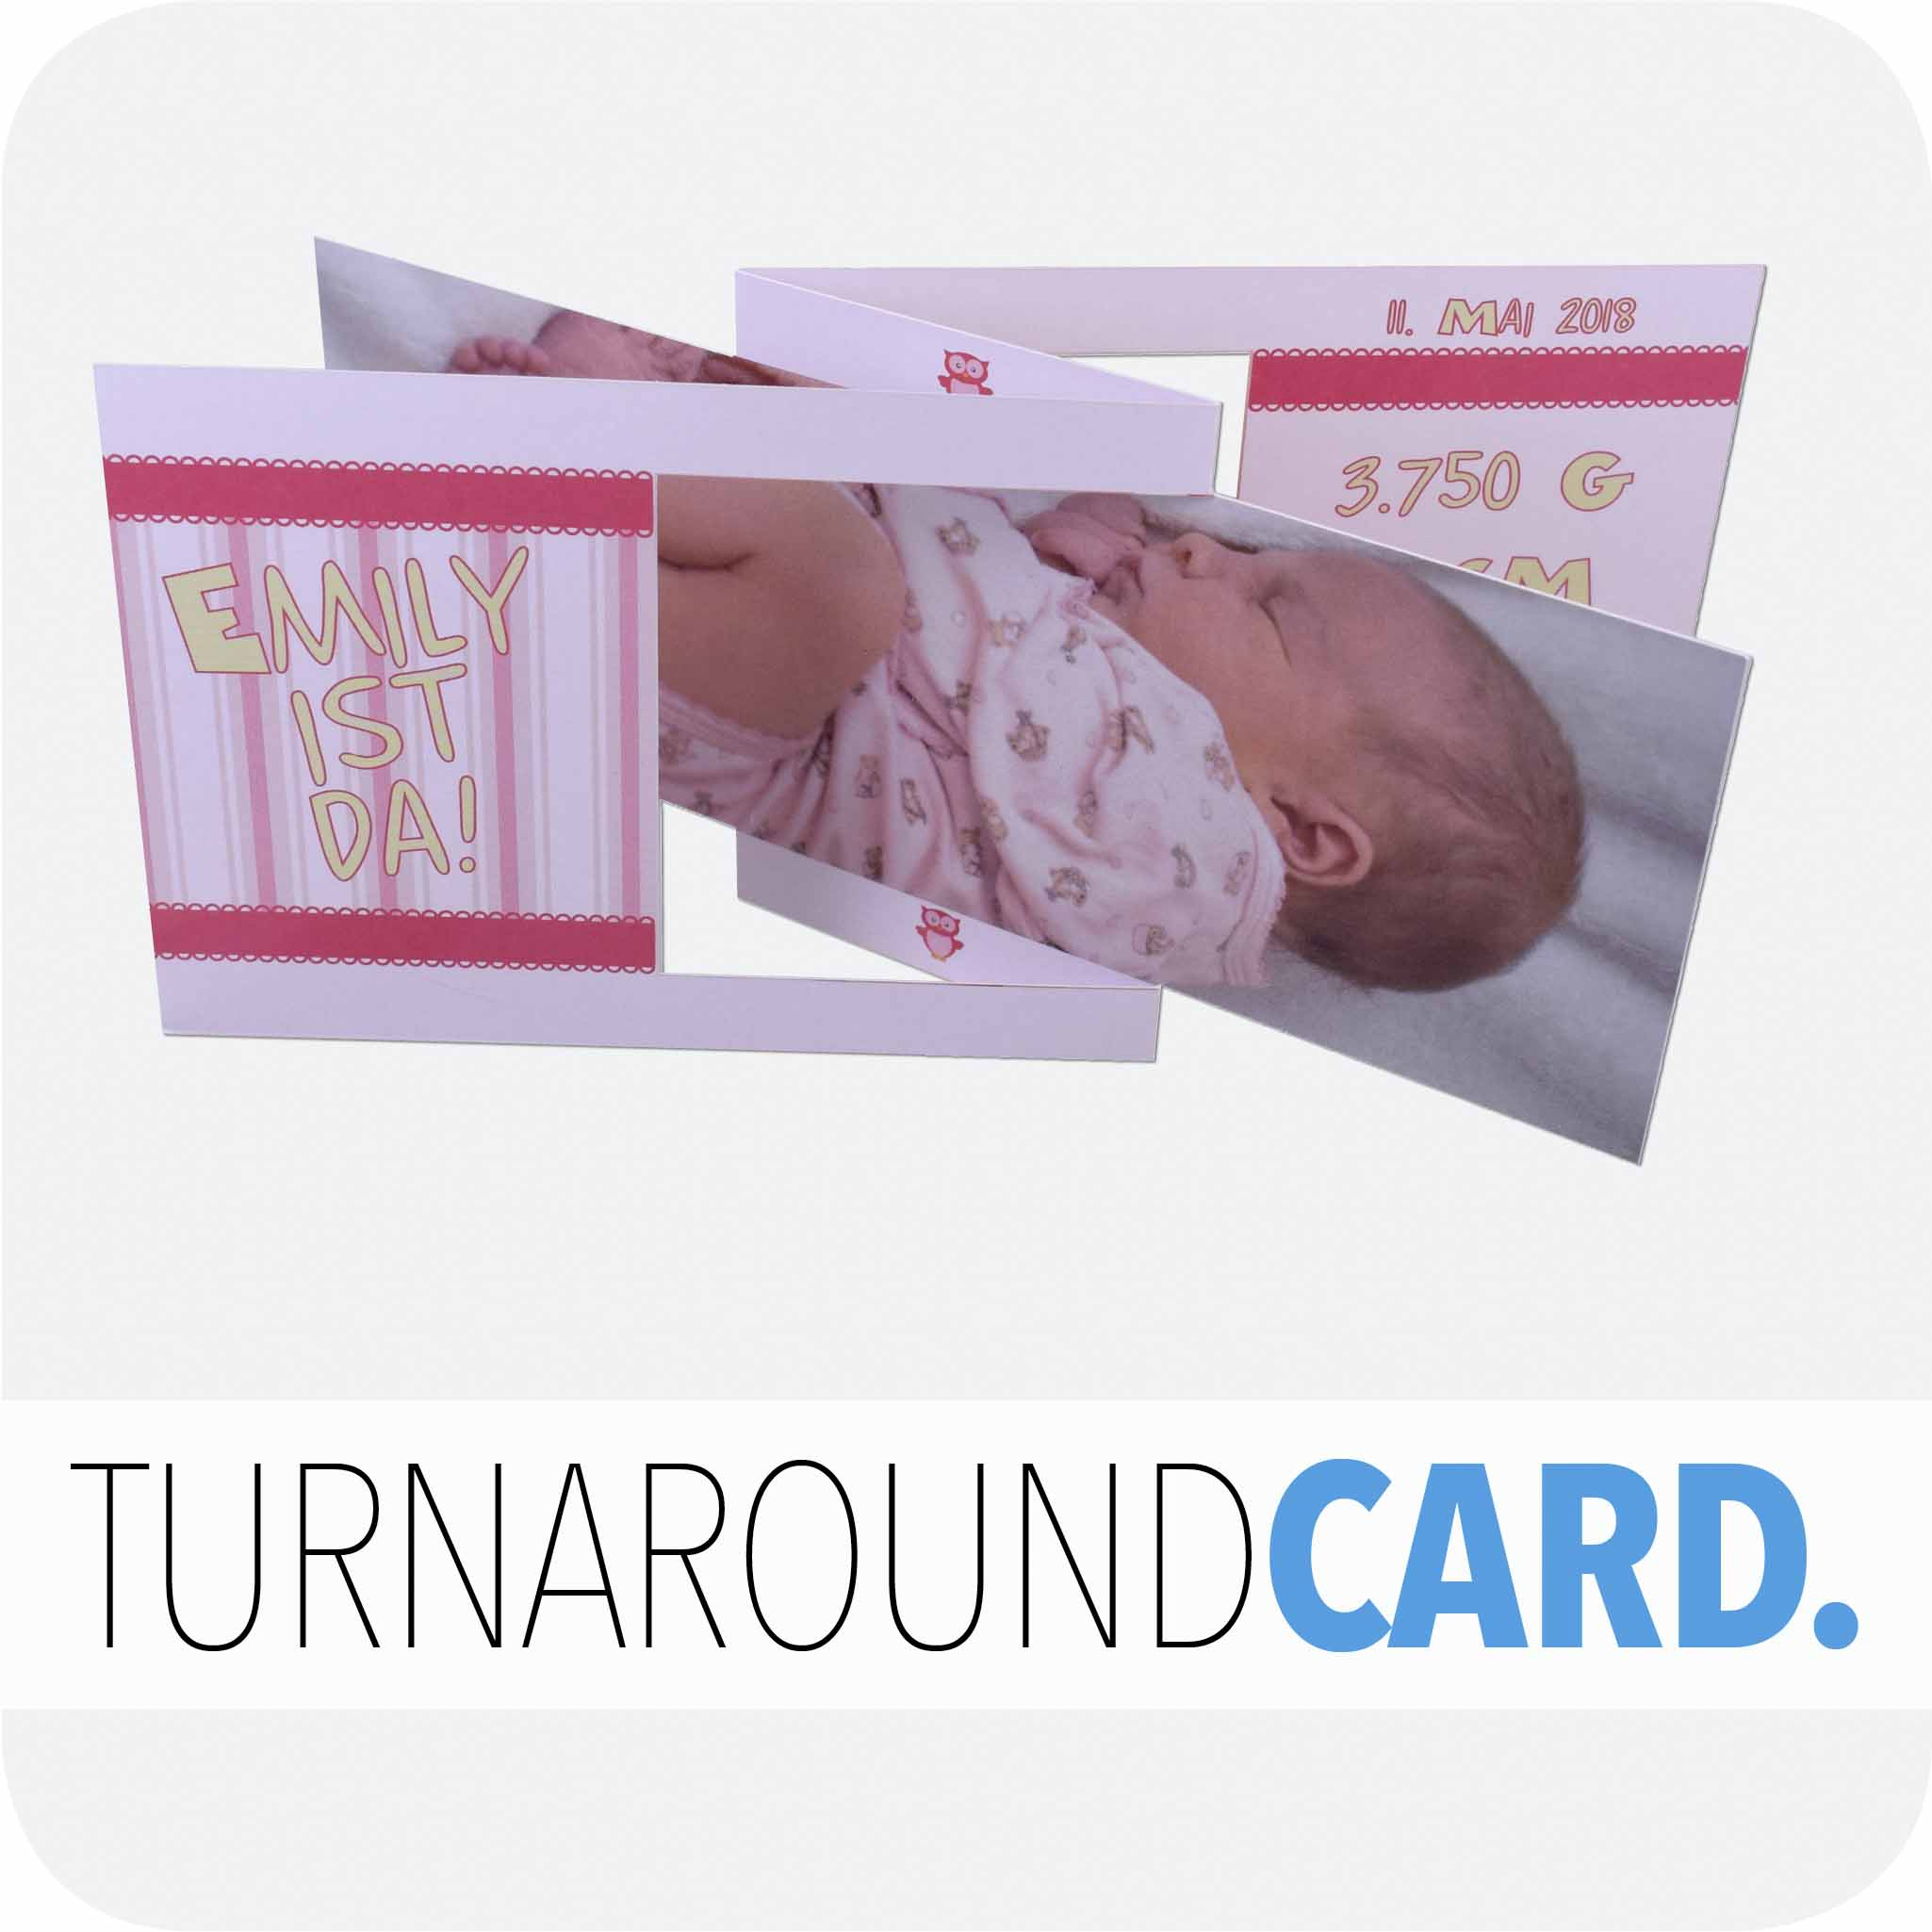 Turnaround card